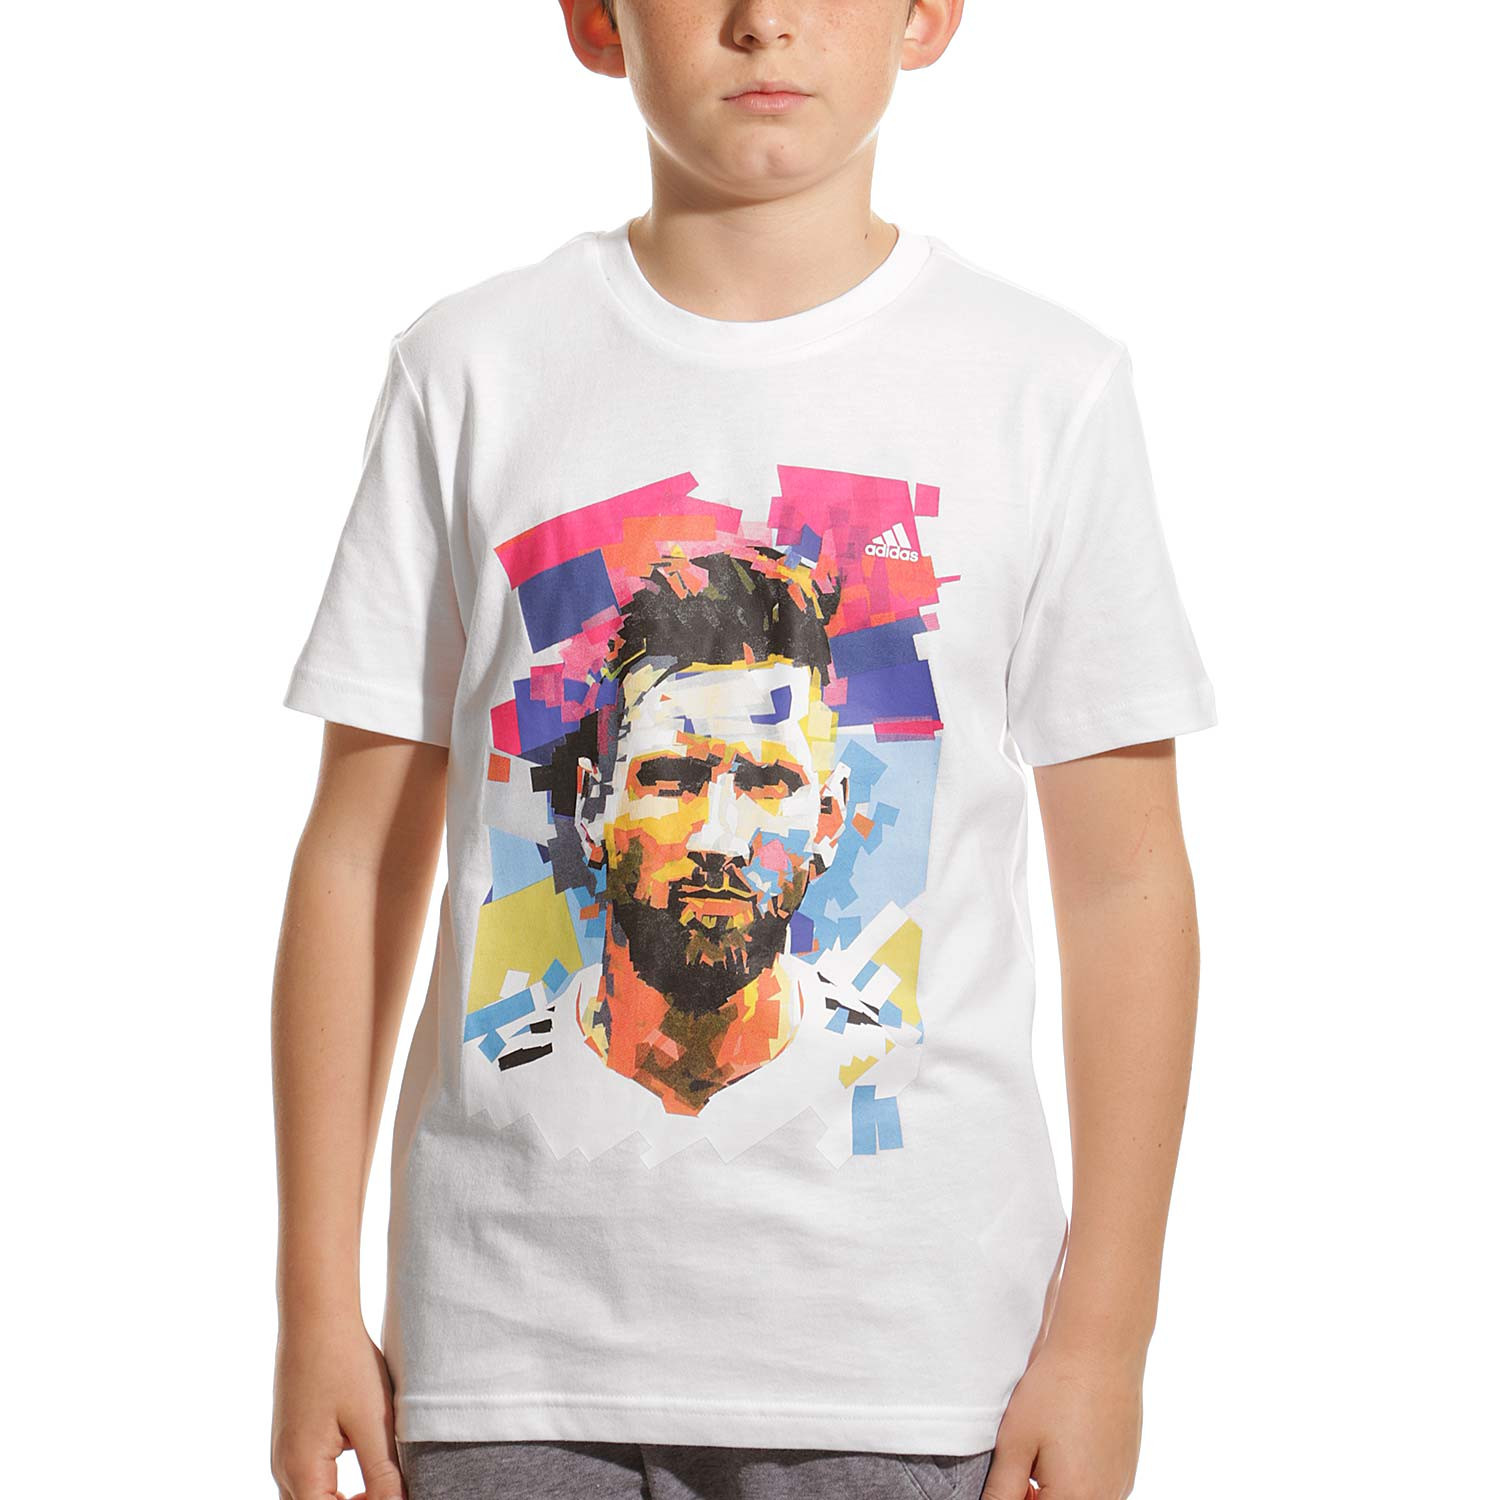 Camiseta adidas Messi Niño White - Fútbol Emotion